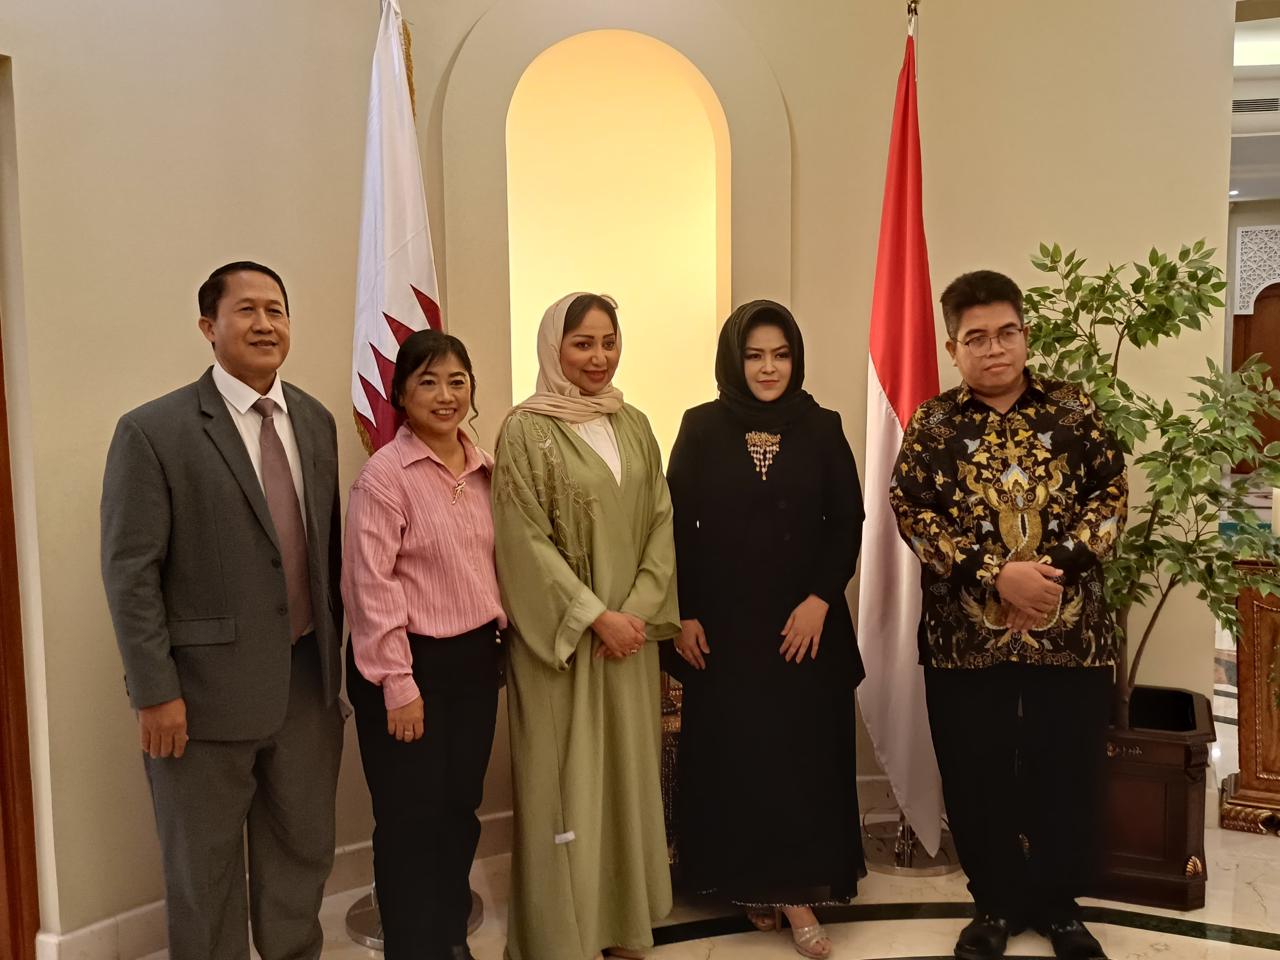 Sultan Kacirebonan Memperdalam Kerjasama dengan Dubes Qatar dalam Program Sosial, Budaya, dan Ekonomi